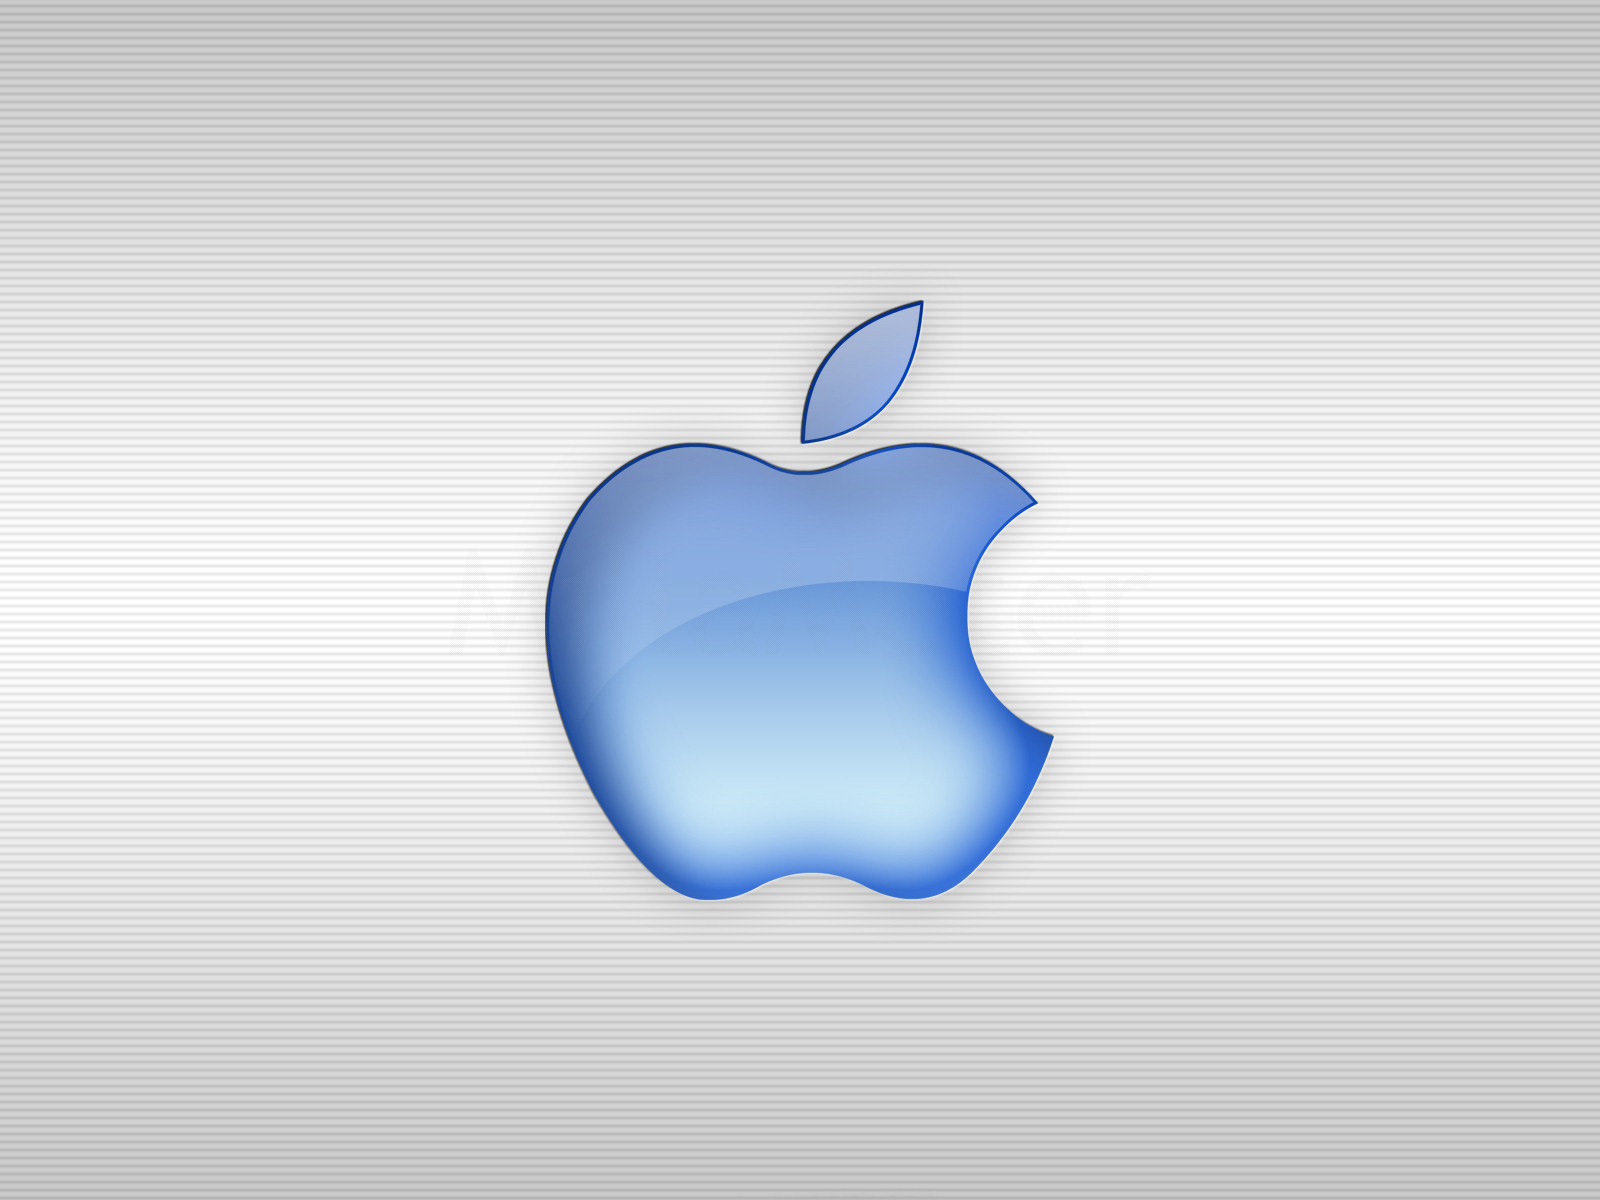 Apple Imac - Blue Apple - HD Wallpaper 